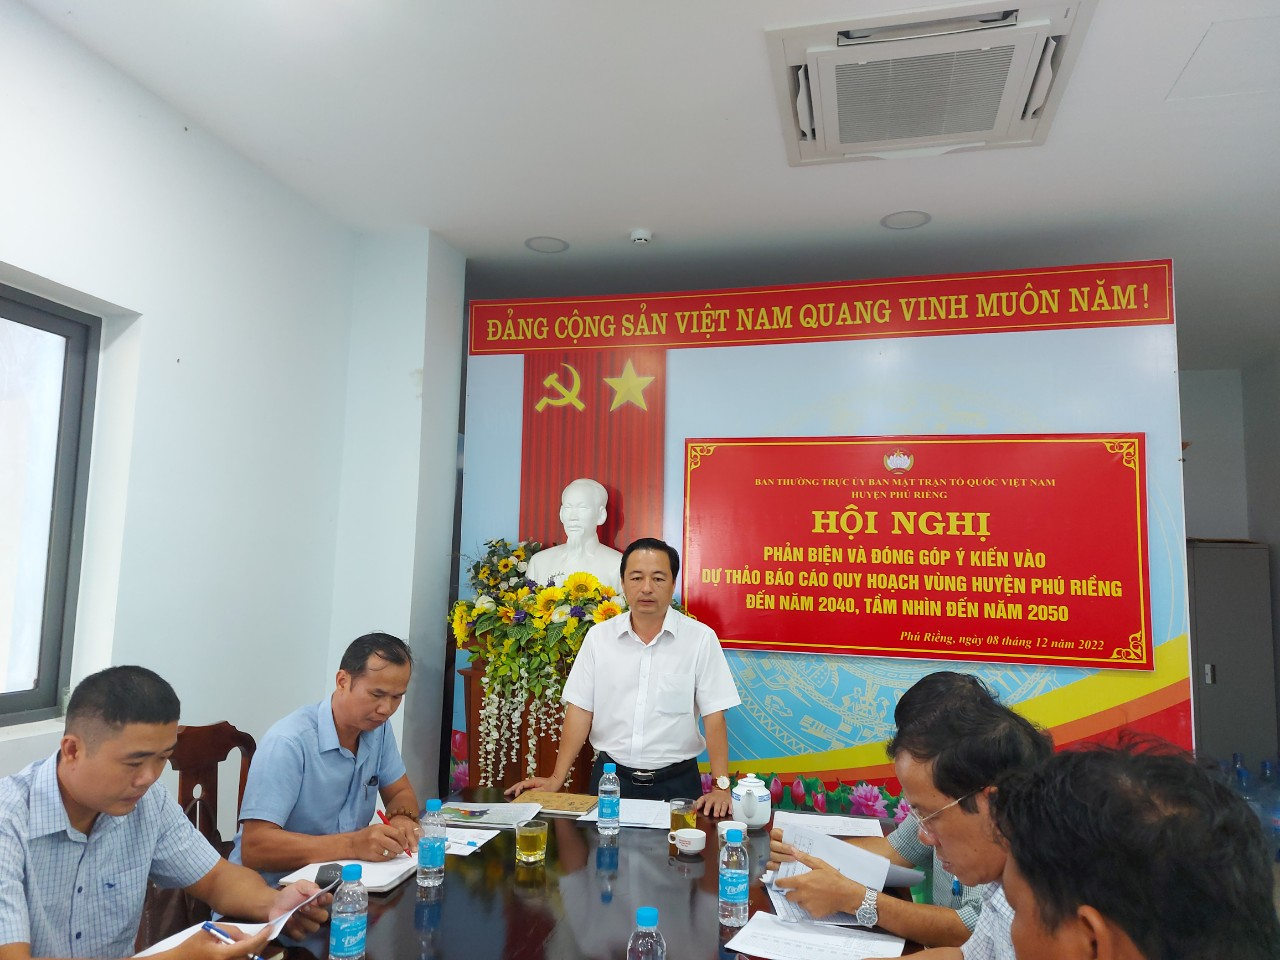 Hội nghị đóng góp ý kiến vào báo cáo quy hoạch vùng huyện Phú Riềng đến năm 2040, tầm nhìn đến năm 2050